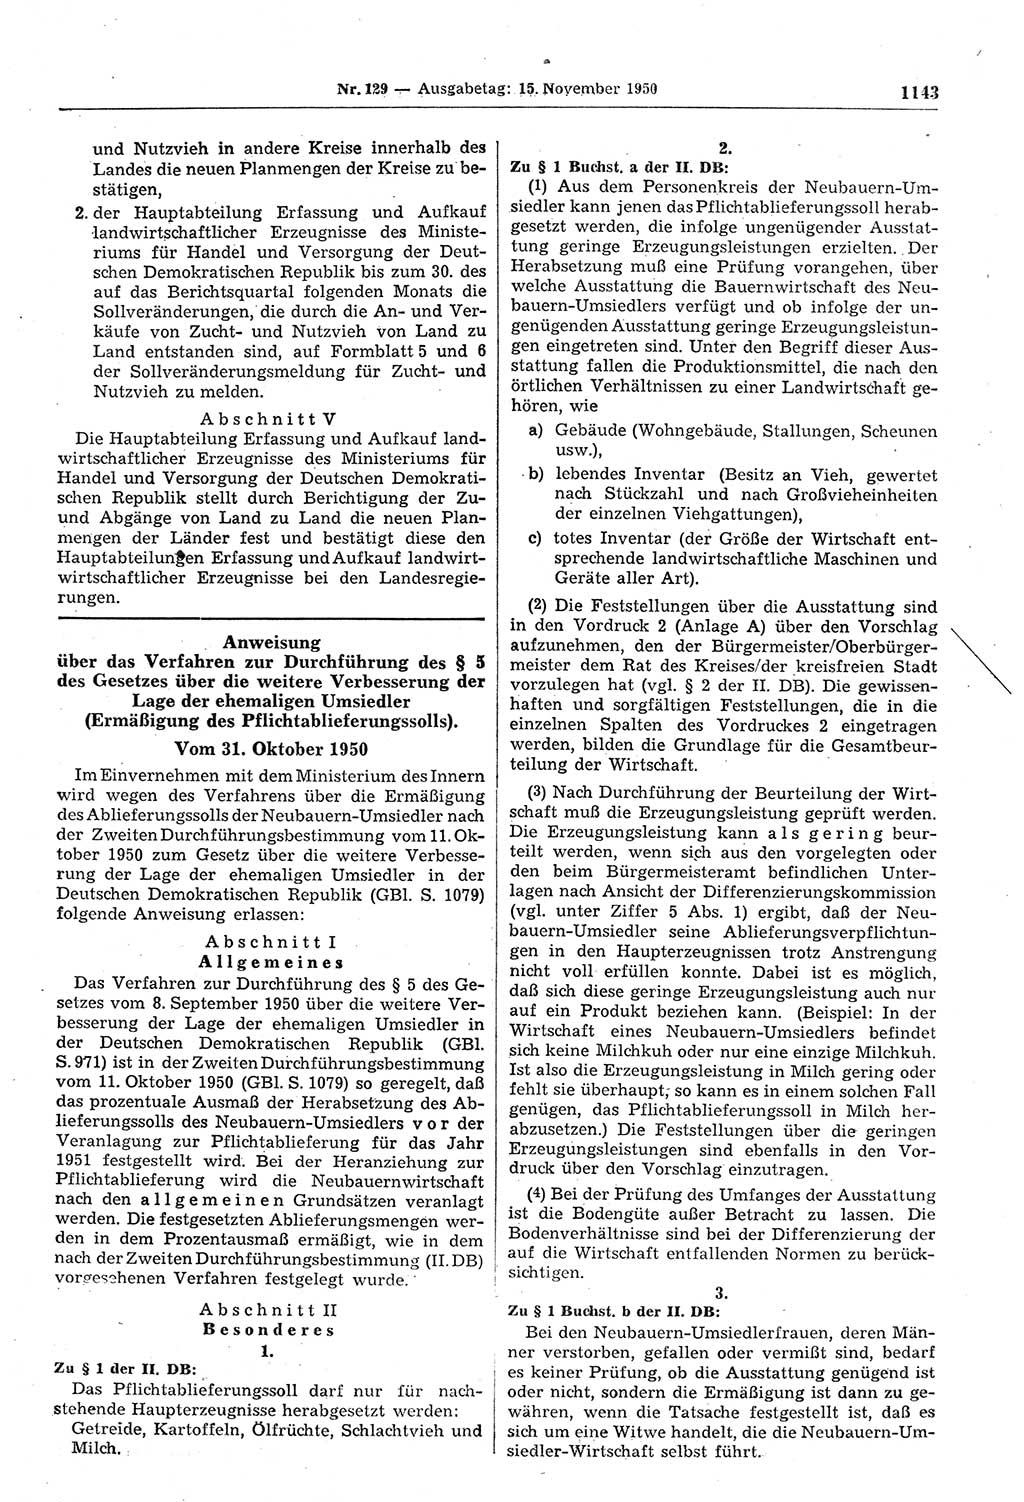 Gesetzblatt (GBl.) der Deutschen Demokratischen Republik (DDR) 1950, Seite 1143 (GBl. DDR 1950, S. 1143)